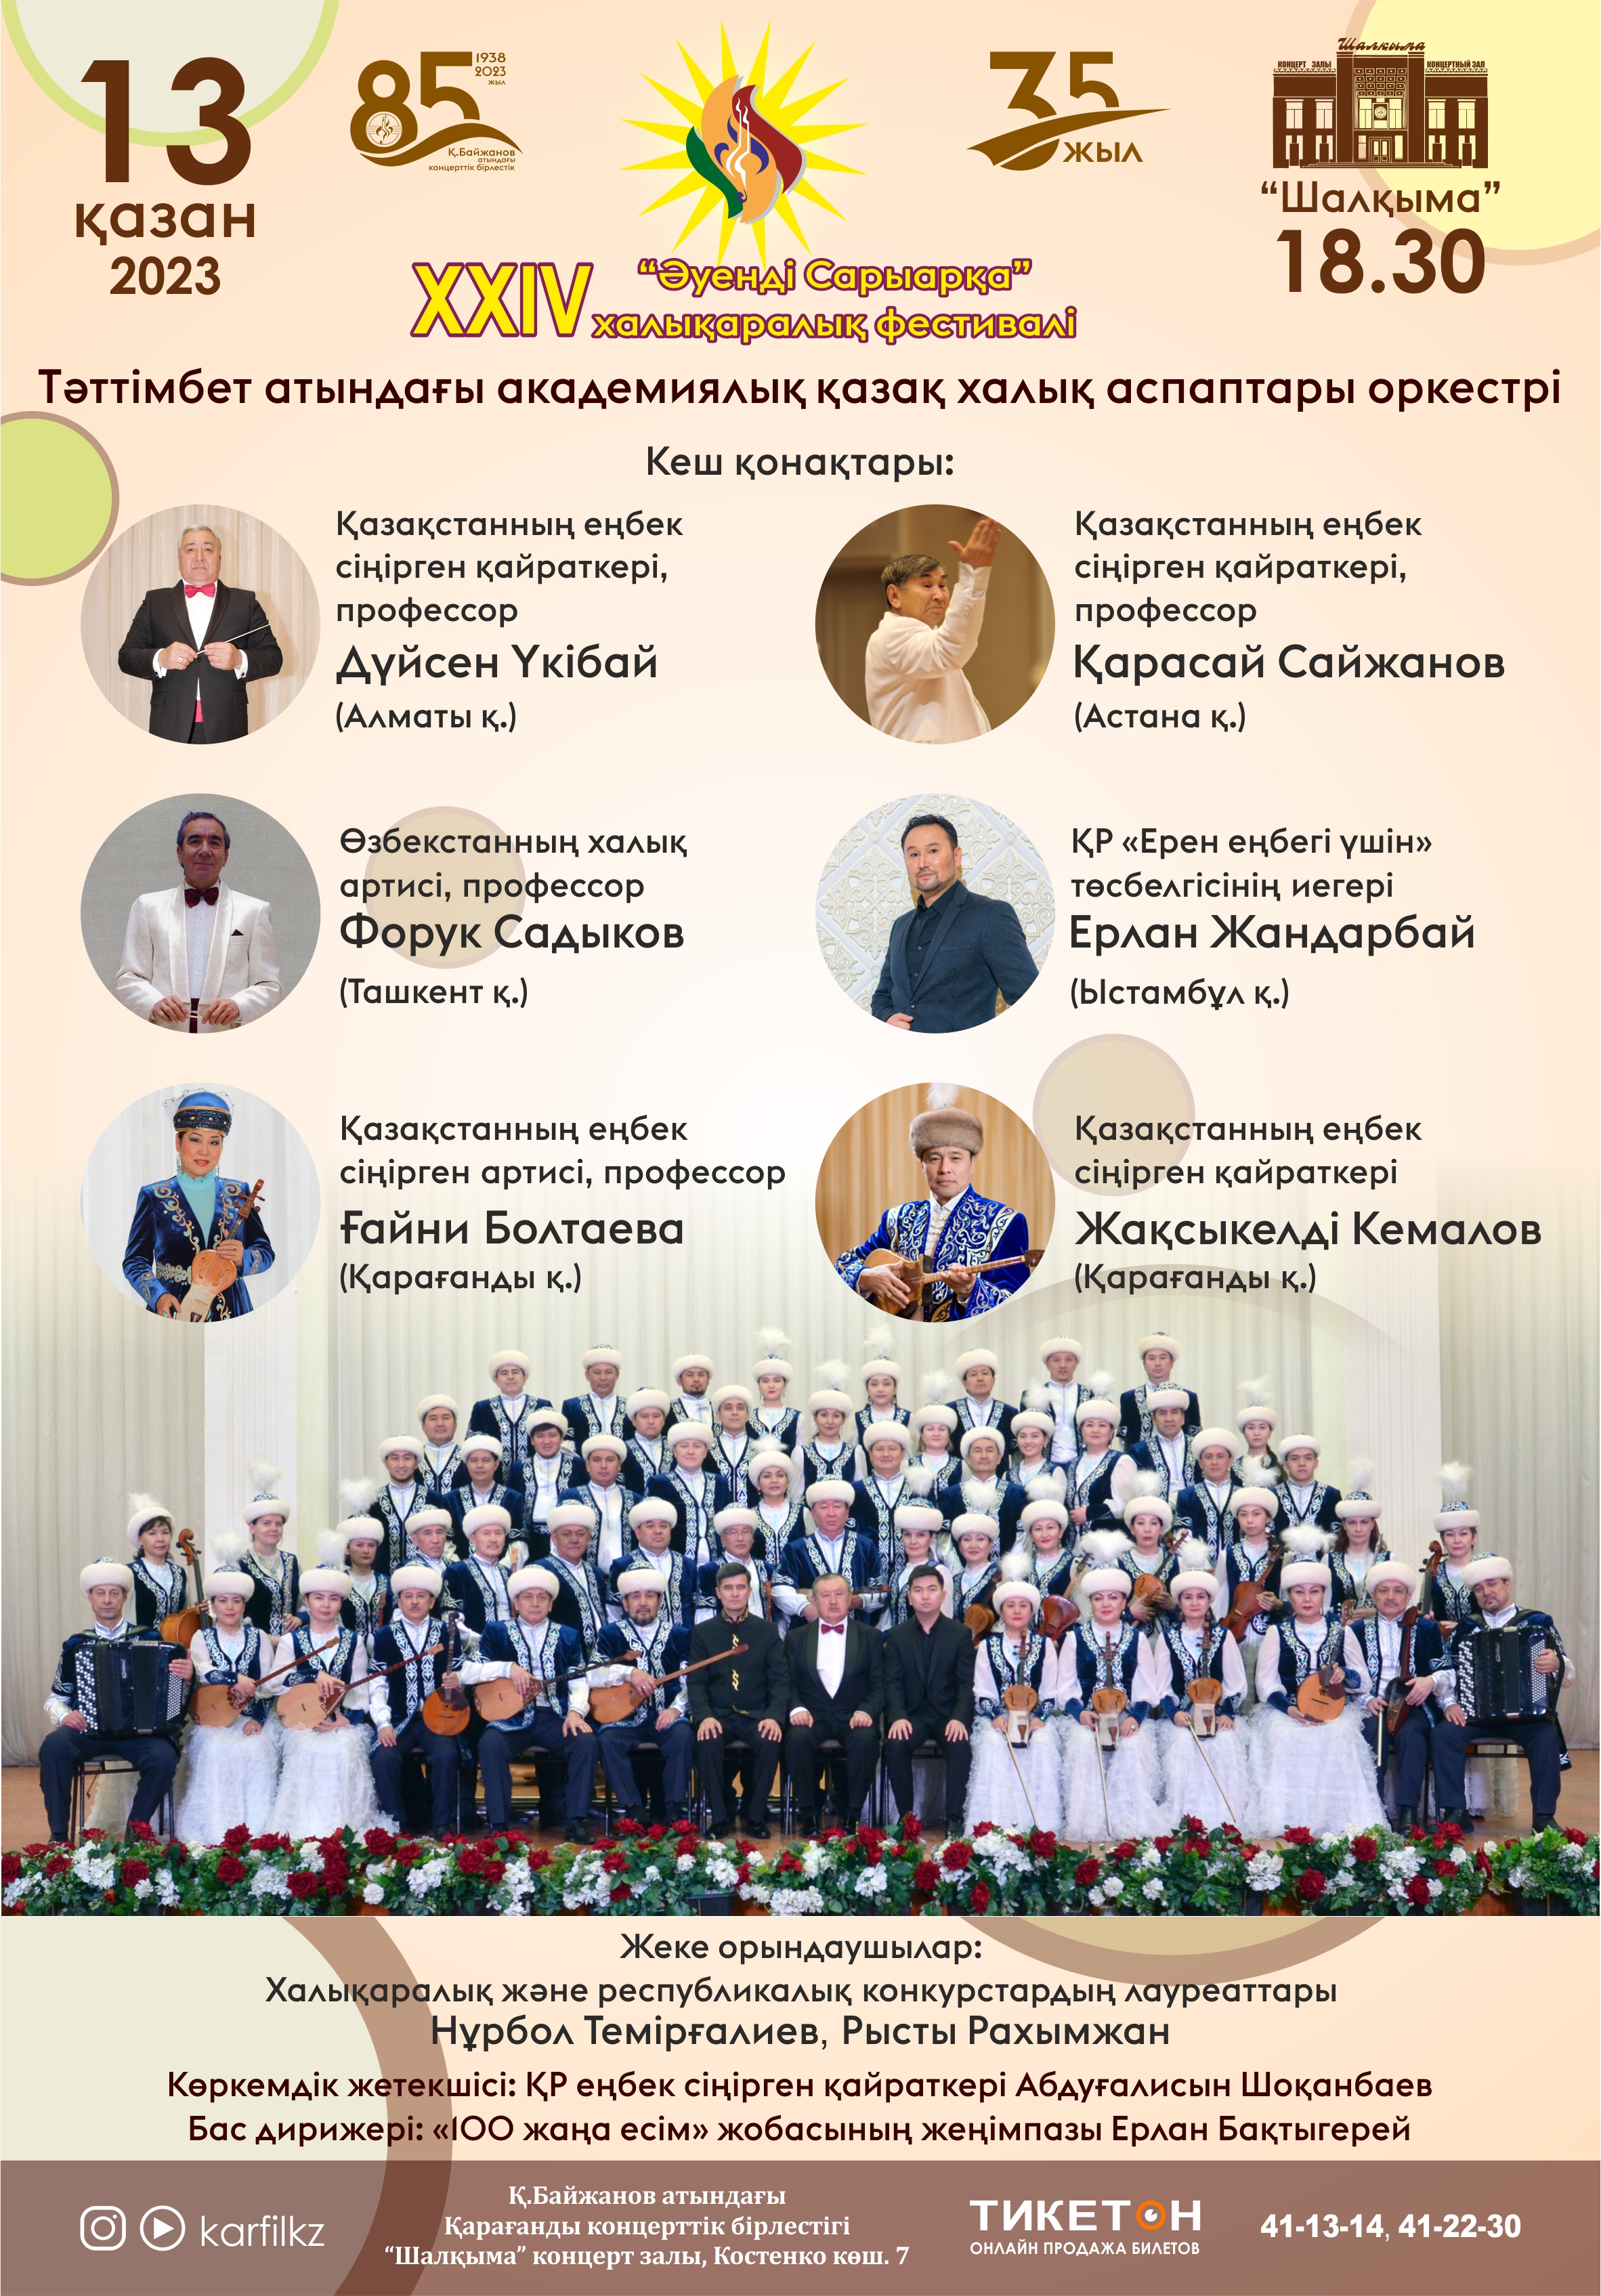 Концерт академического оркестра казахских народных инструментов имени Таттимбета